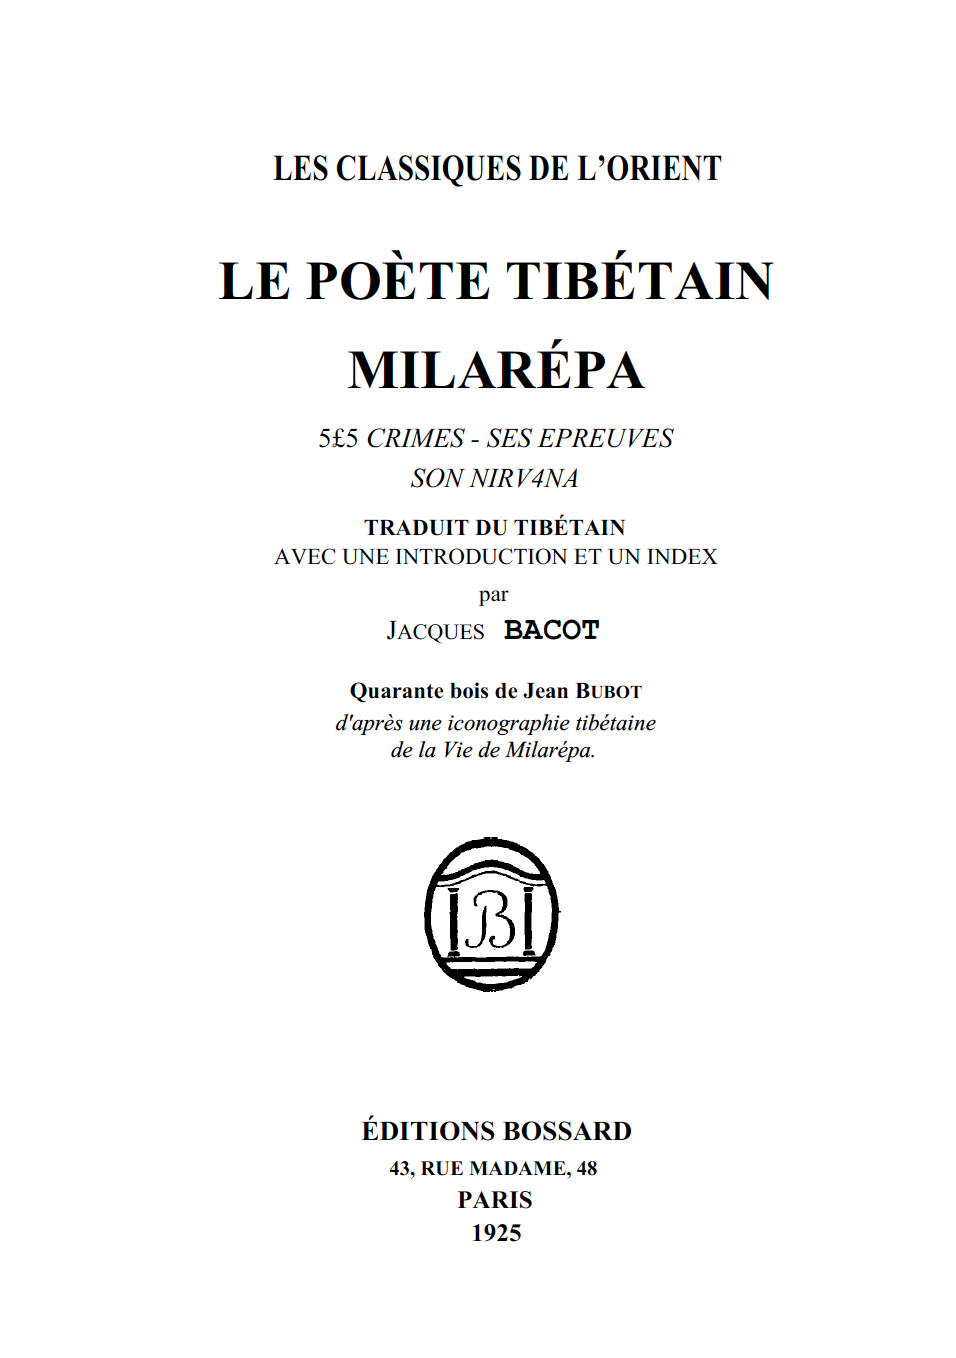 Le Poete Tibetain Milarepa-front.jpg